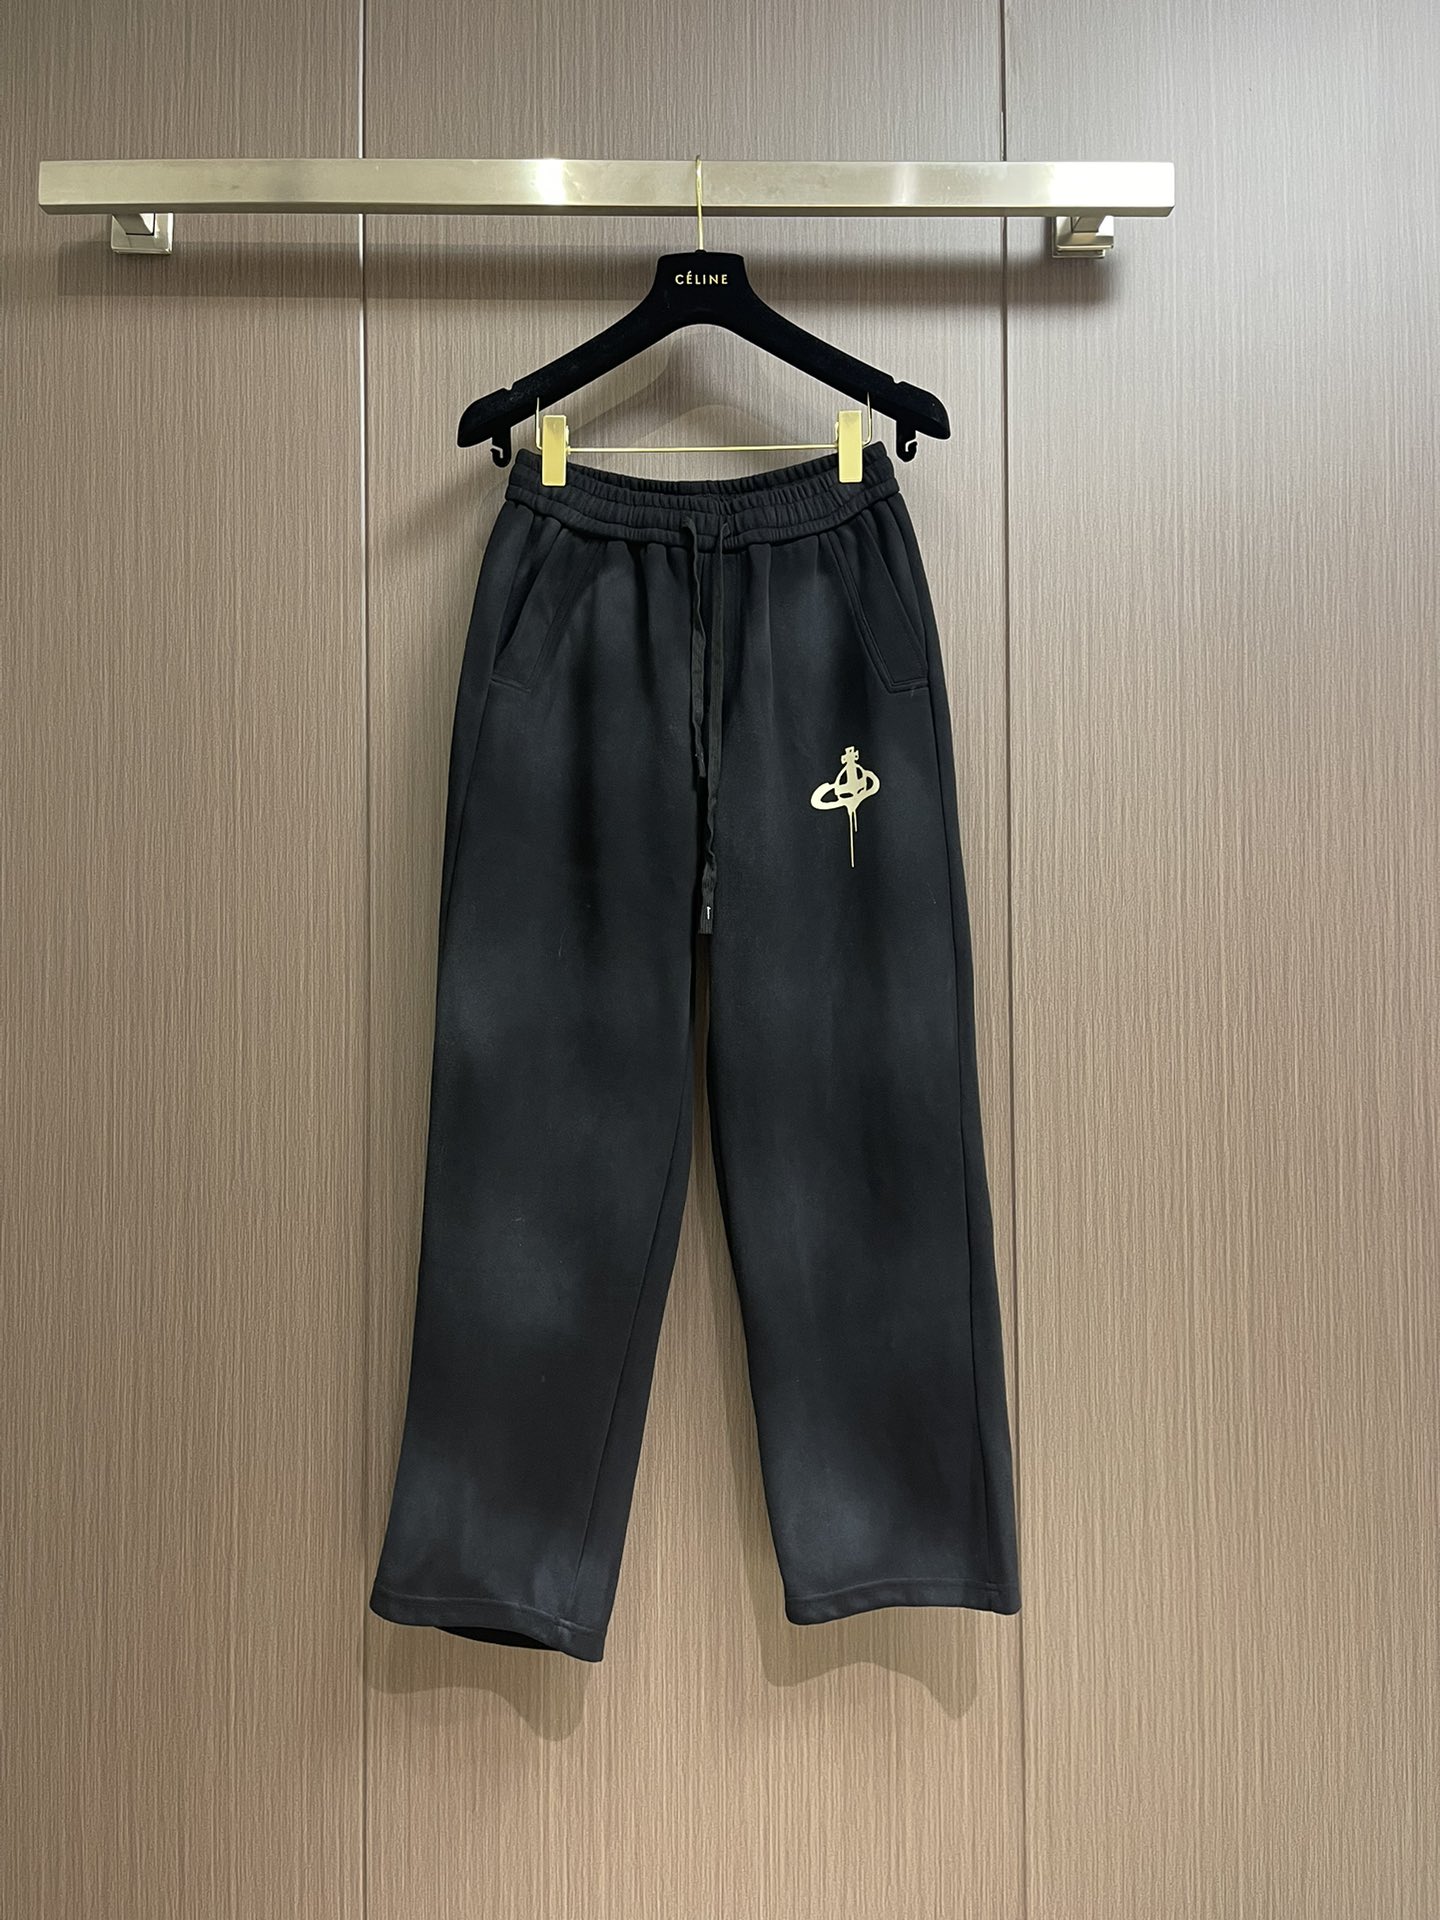 Vivienne Westwood Clothing Pants & Trousers Unisex Cotton Casual